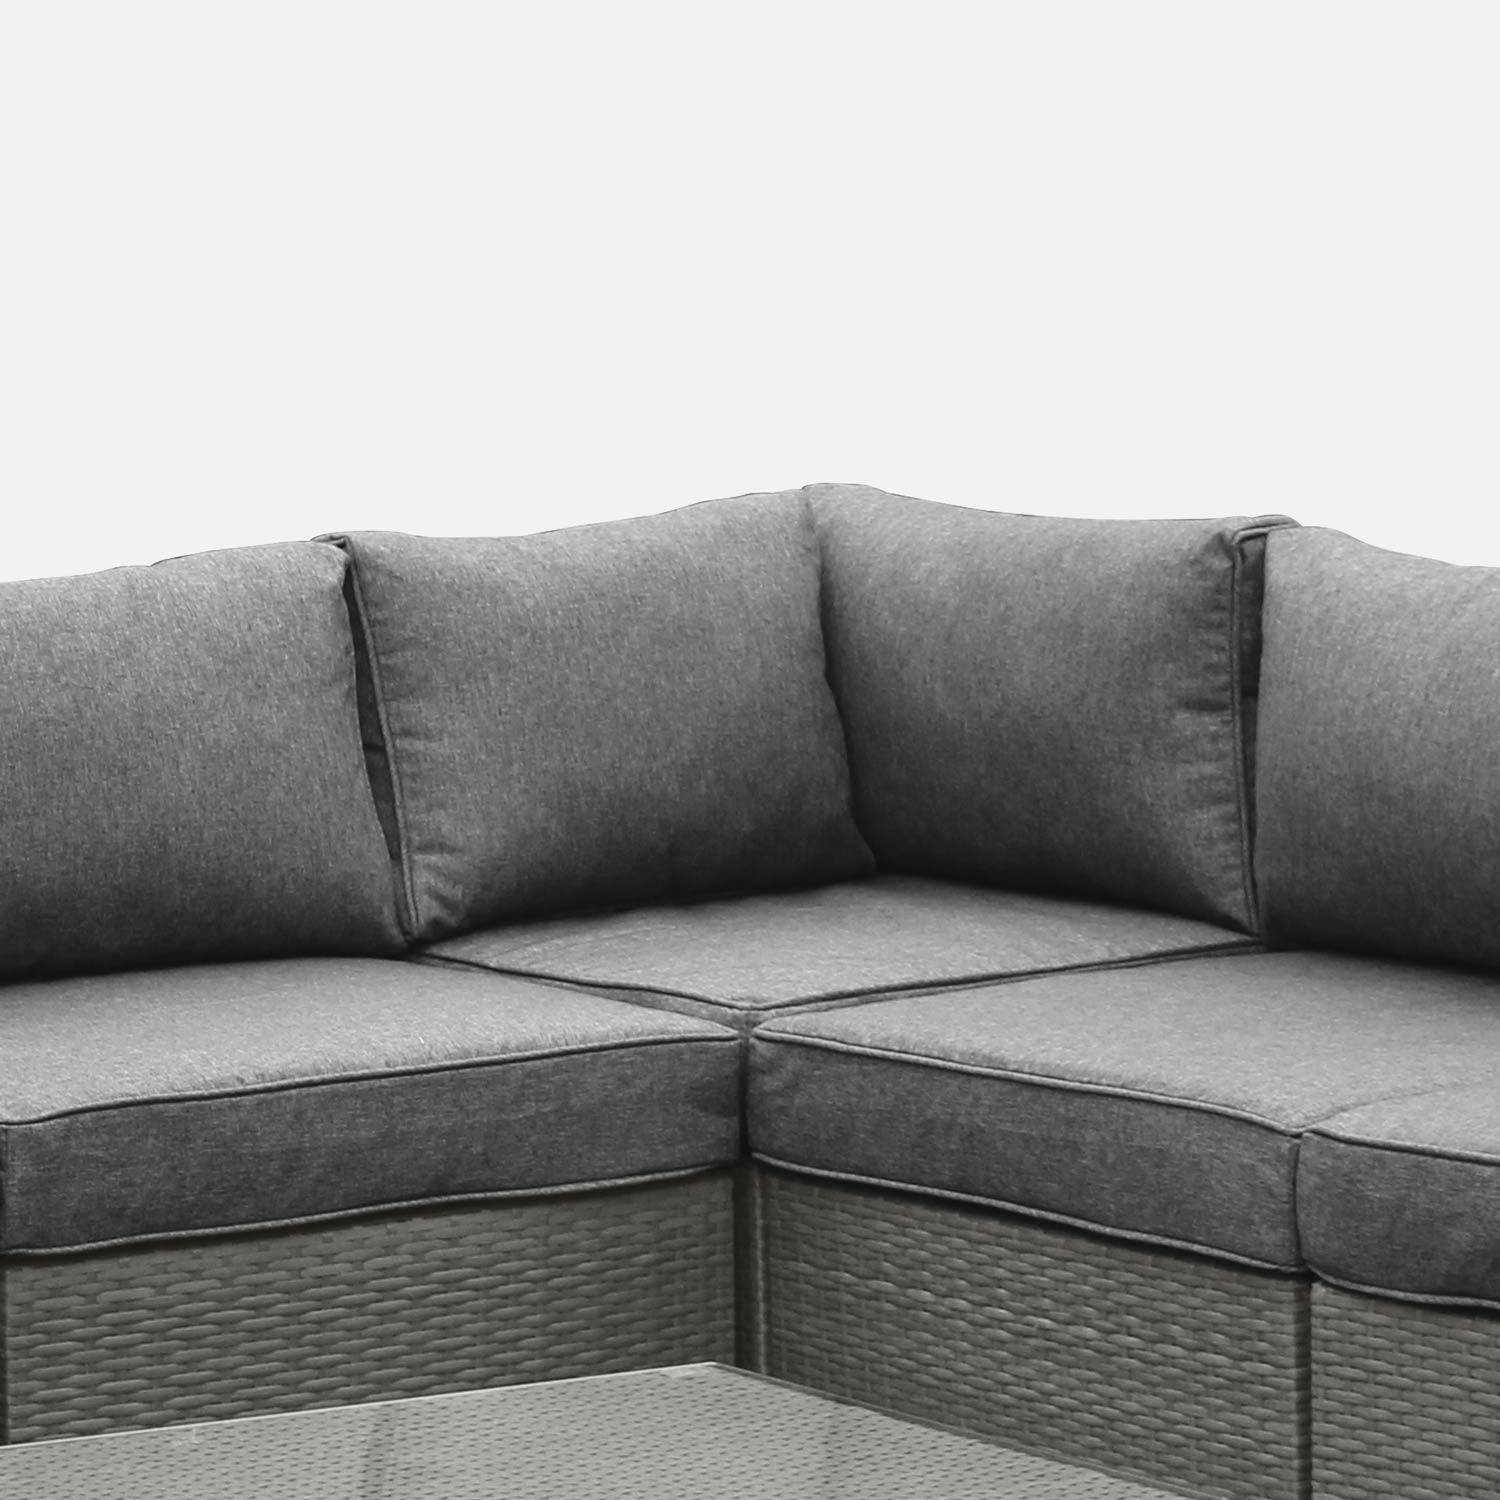 Gartengarnitur aus Kunststoffrattan - Napoli - grau, graumelierte Kissen - 5 Sitze - 2 Sessel ohne Armlehnen, 3 Ecksessel, ein Couchtisch Photo3